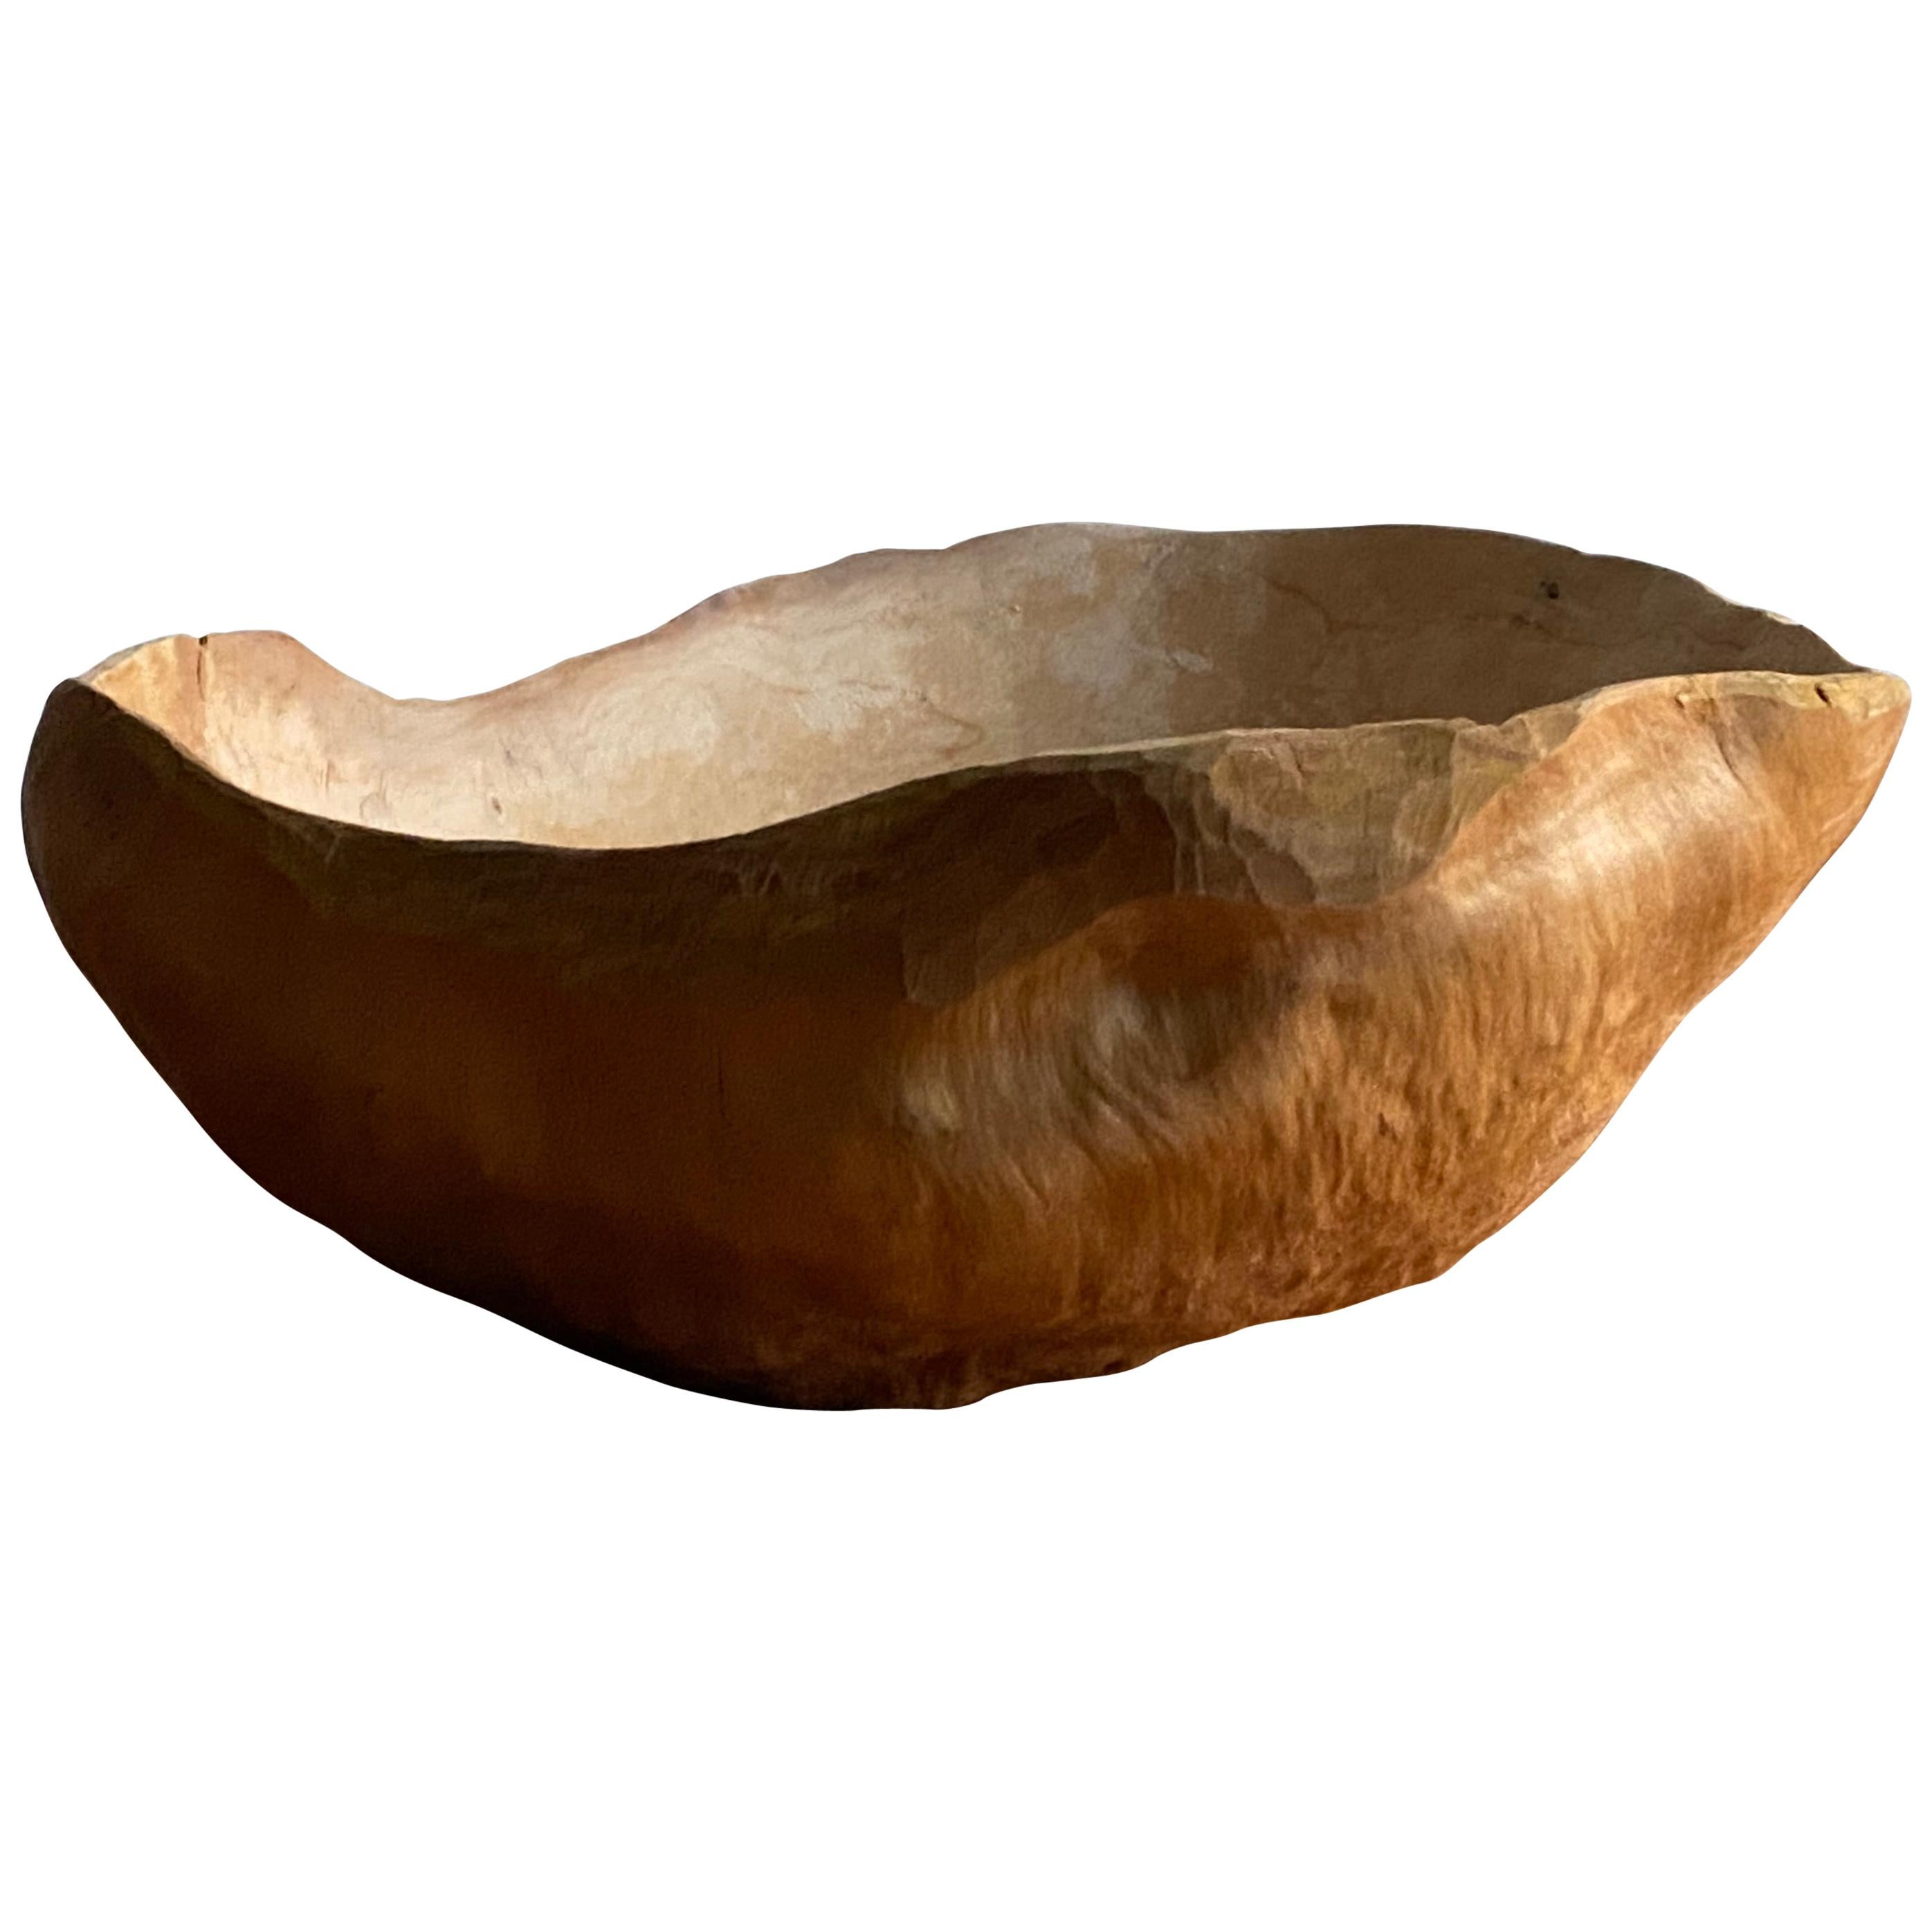 Swedish Craft, Organic Burl Wood Bowl "Vrilskål", Sweden Signed, Dated 1952